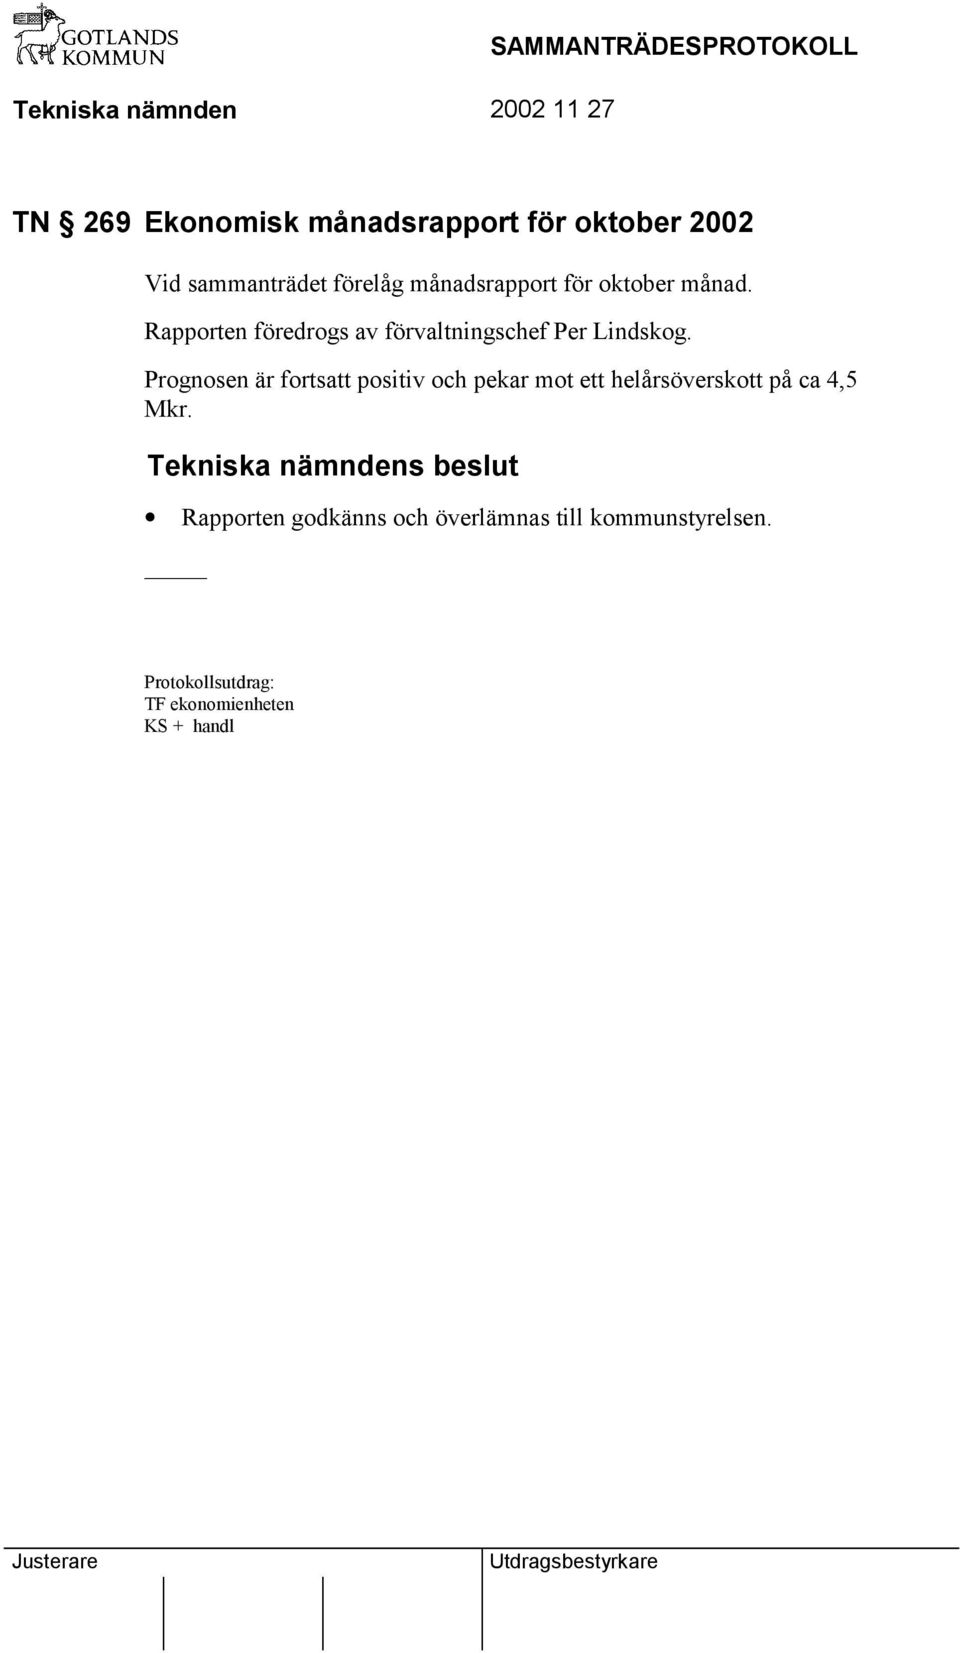 Rapporten föredrogs av förvaltningschef Per Lindskog.